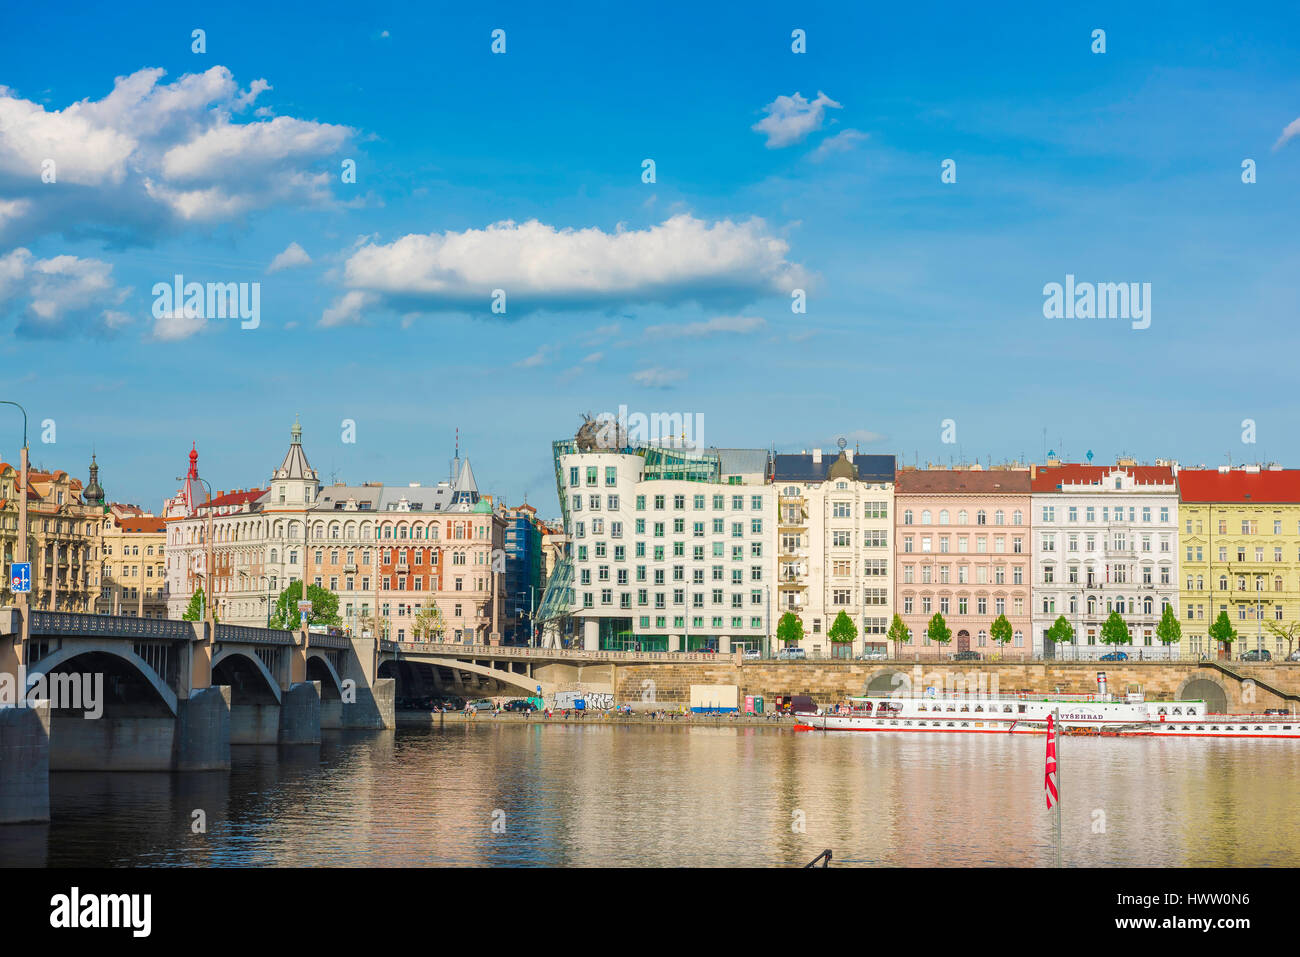 Prague river Vltava, view of buildings along the Nove Mesto side of the River Vltava in Prague, including the famous Dancing House (centre), Czech Rep Stock Photo